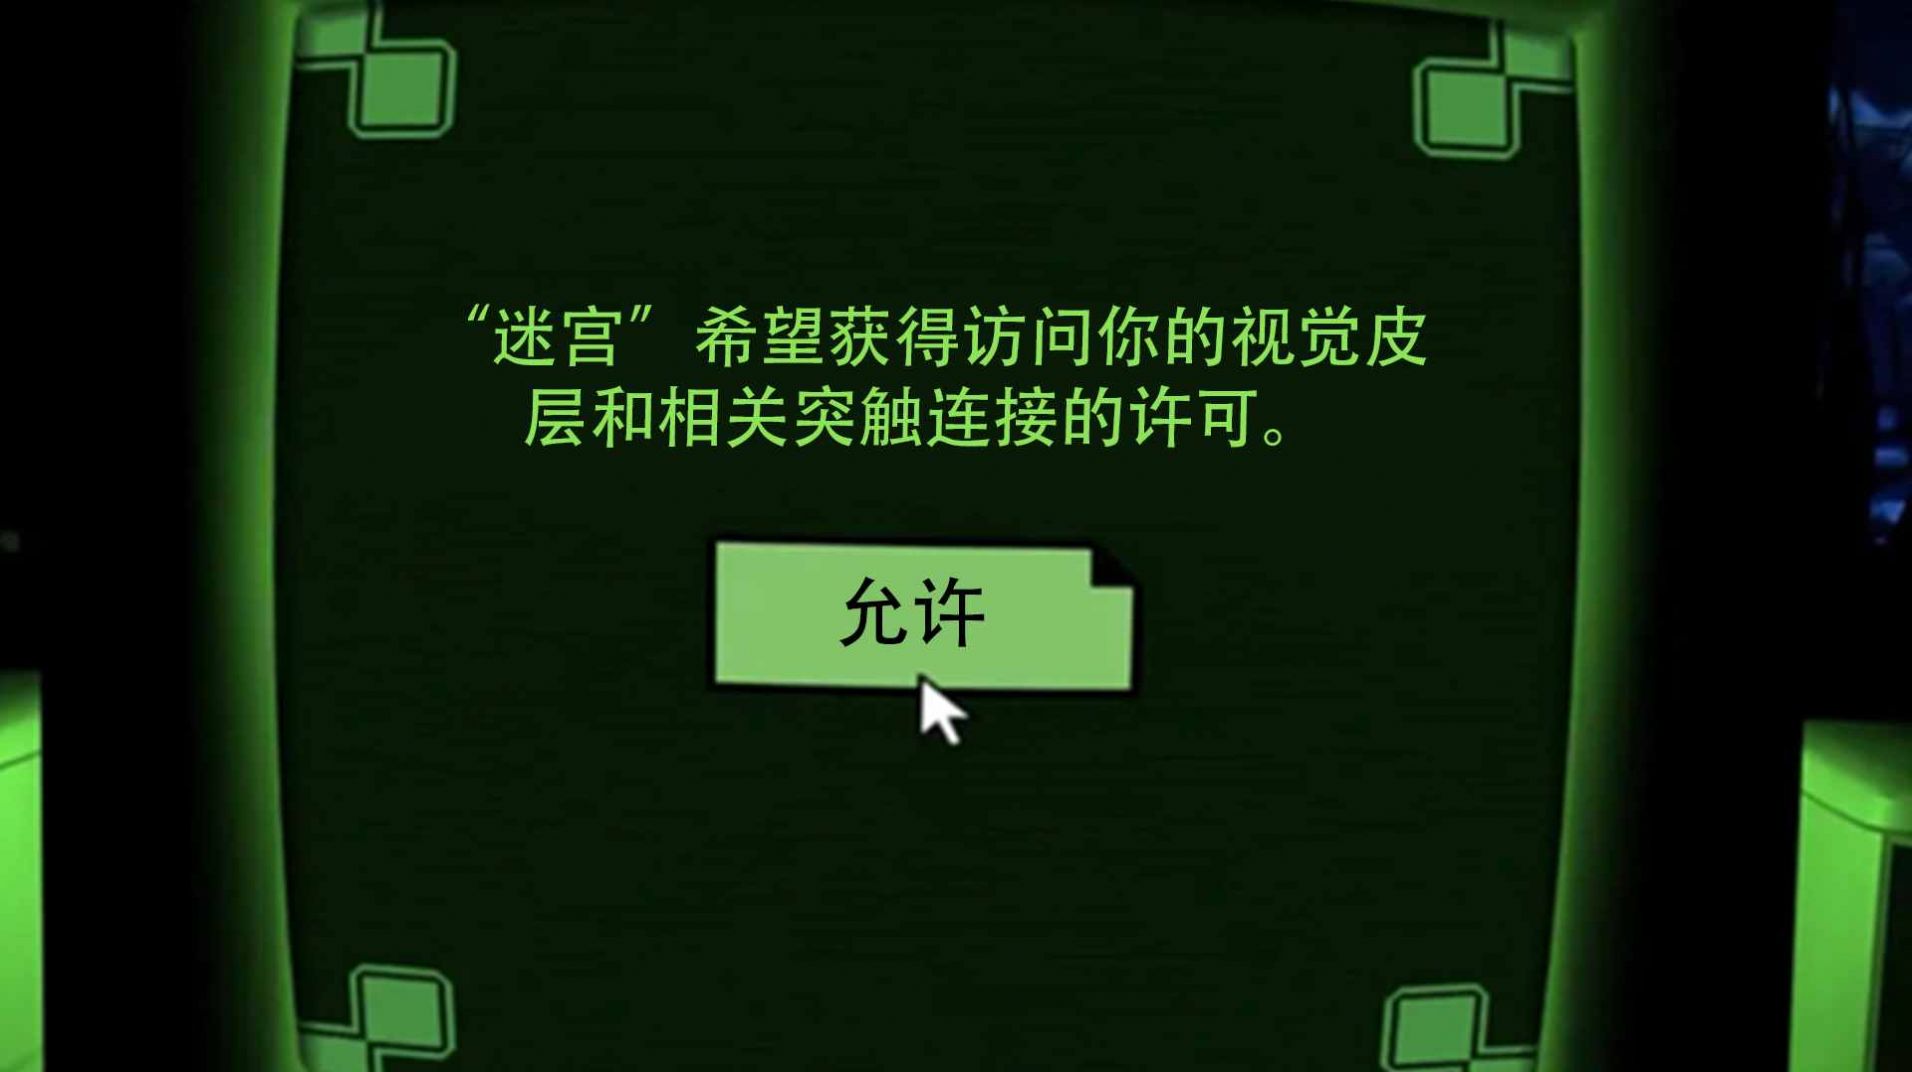 密室解谜逃脱dreader中文版下载,密室解谜逃脱dreader游戏中文完整版 v1.0